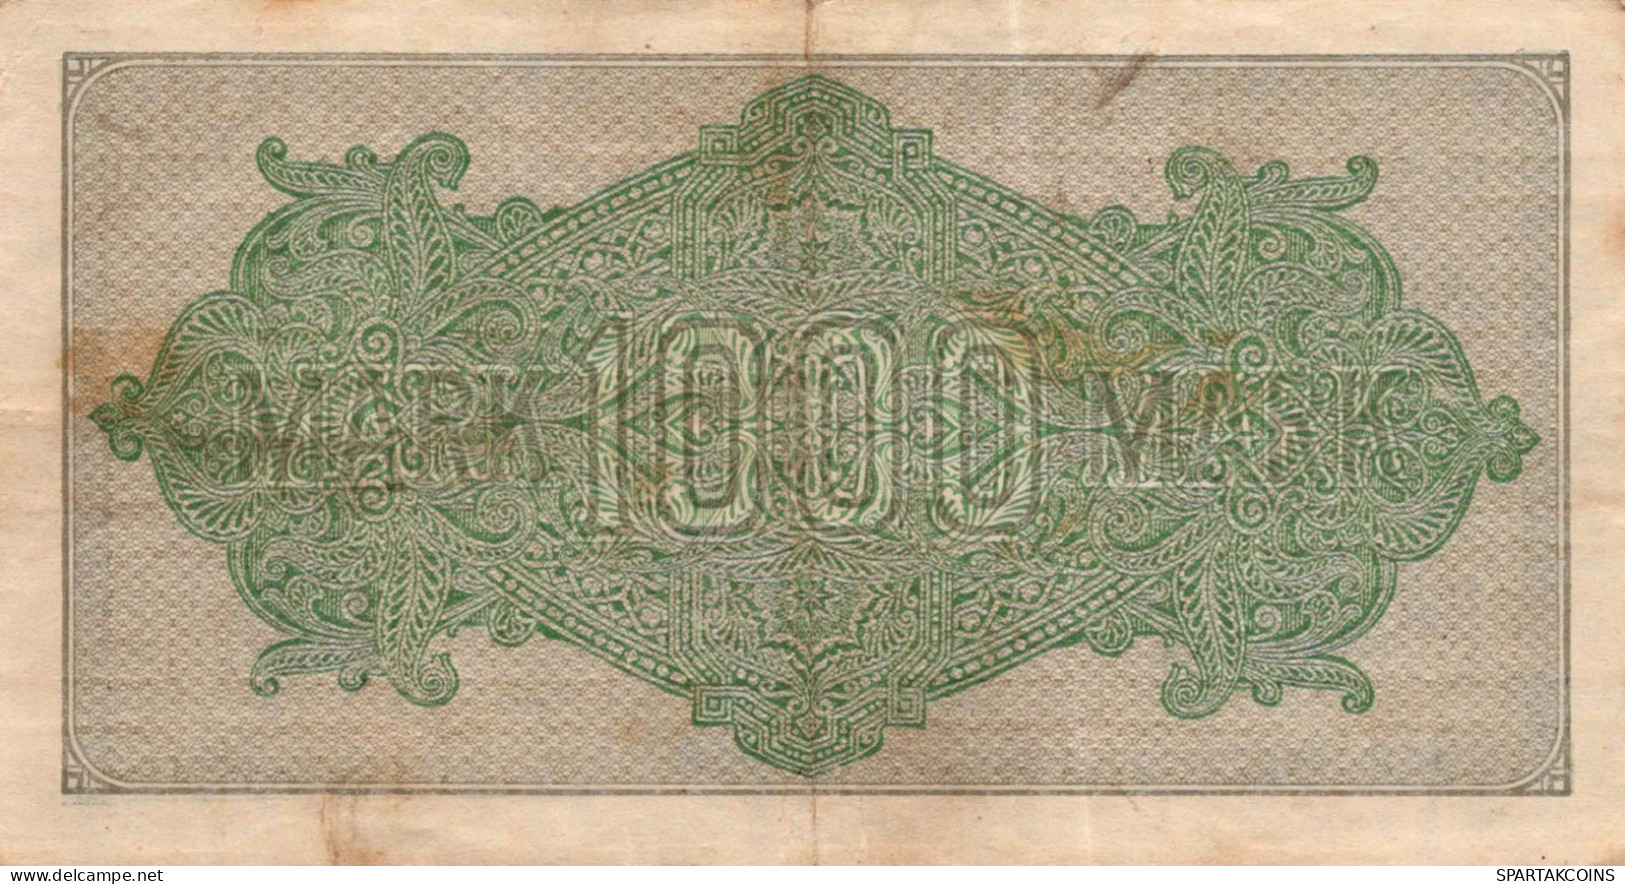 1000 MARK 1922 Stadt BERLIN DEUTSCHLAND Papiergeld Banknote #PL387 - [11] Emissioni Locali